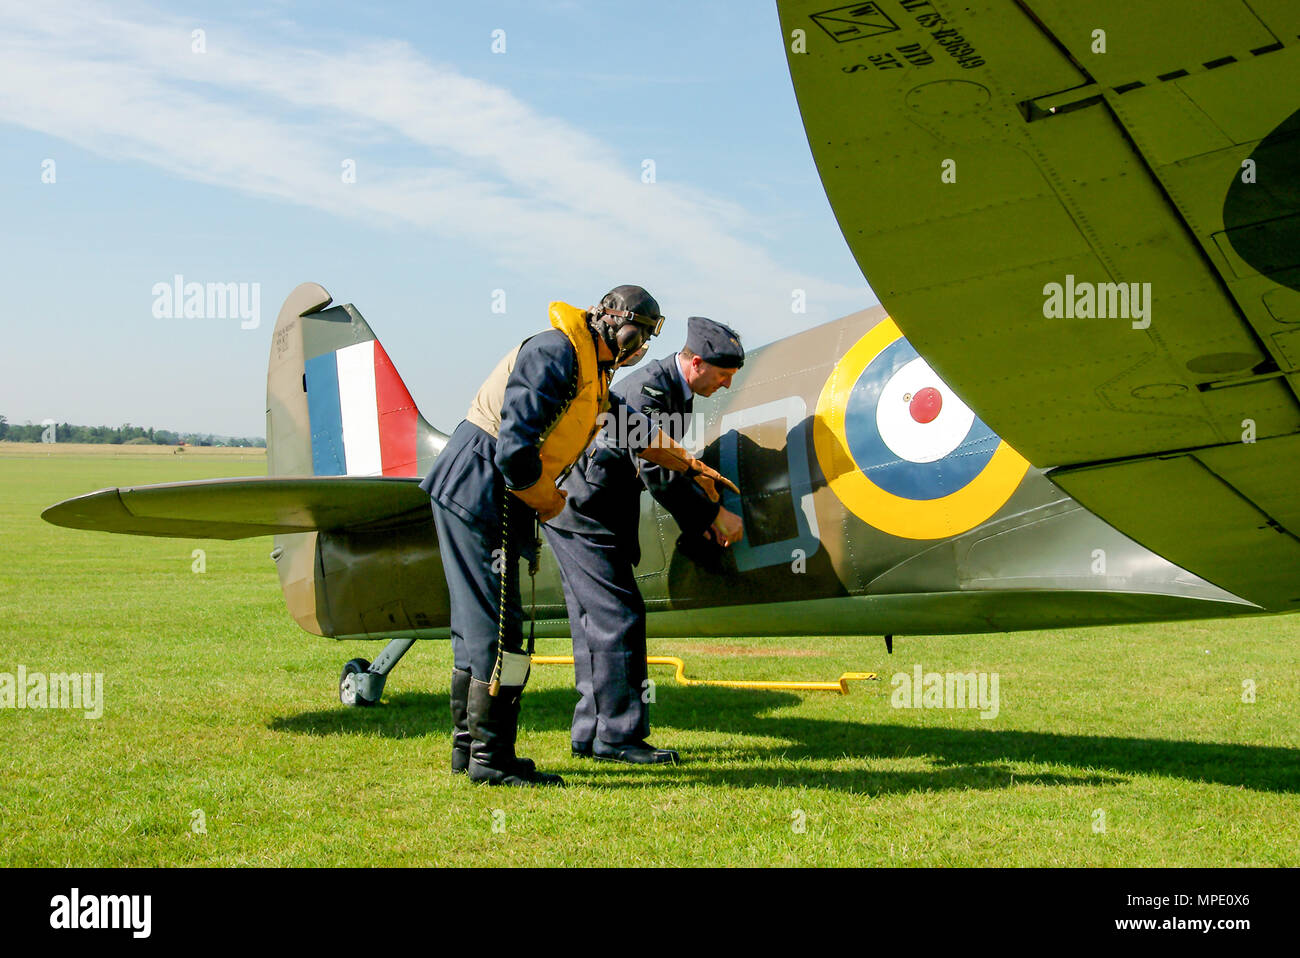 L'ère de la bataille d'Angleterre Spitfire Mk1 avec l'équipe au sol & pilote mécanicien de reconstitution historique discuter les dégâts de combat apparent. Supermarine Spitfire Mark 1 avion Banque D'Images